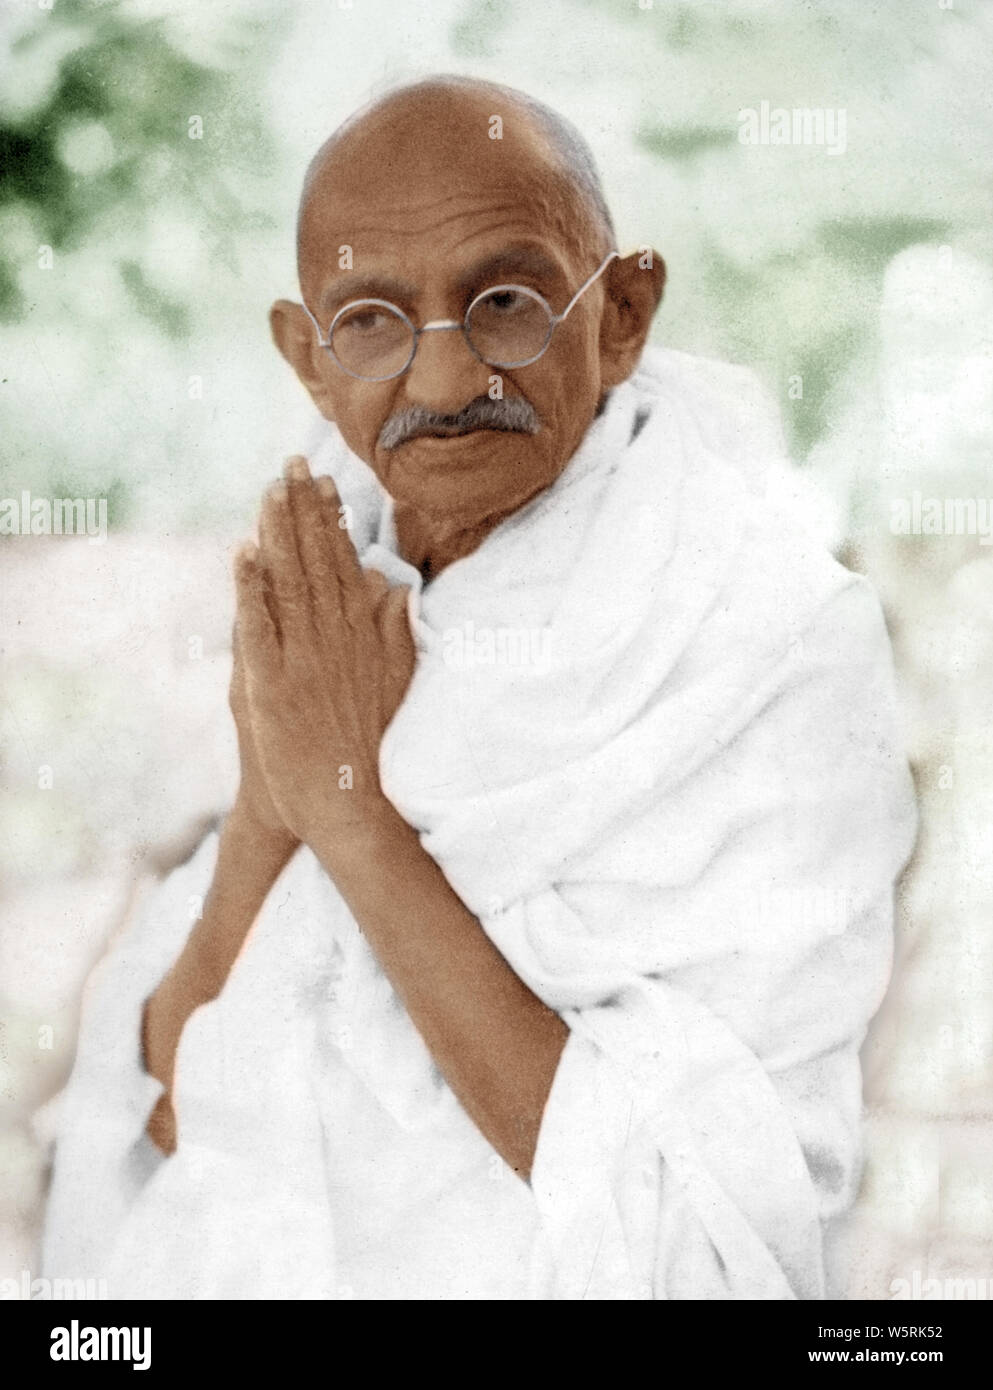 Mahatma Gandhi con las manos dobladas saludos namaste ; Delhi ; India ; Asia ; 18-marzo-1939 ; imagen antigua vintage de 1900s Foto de stock